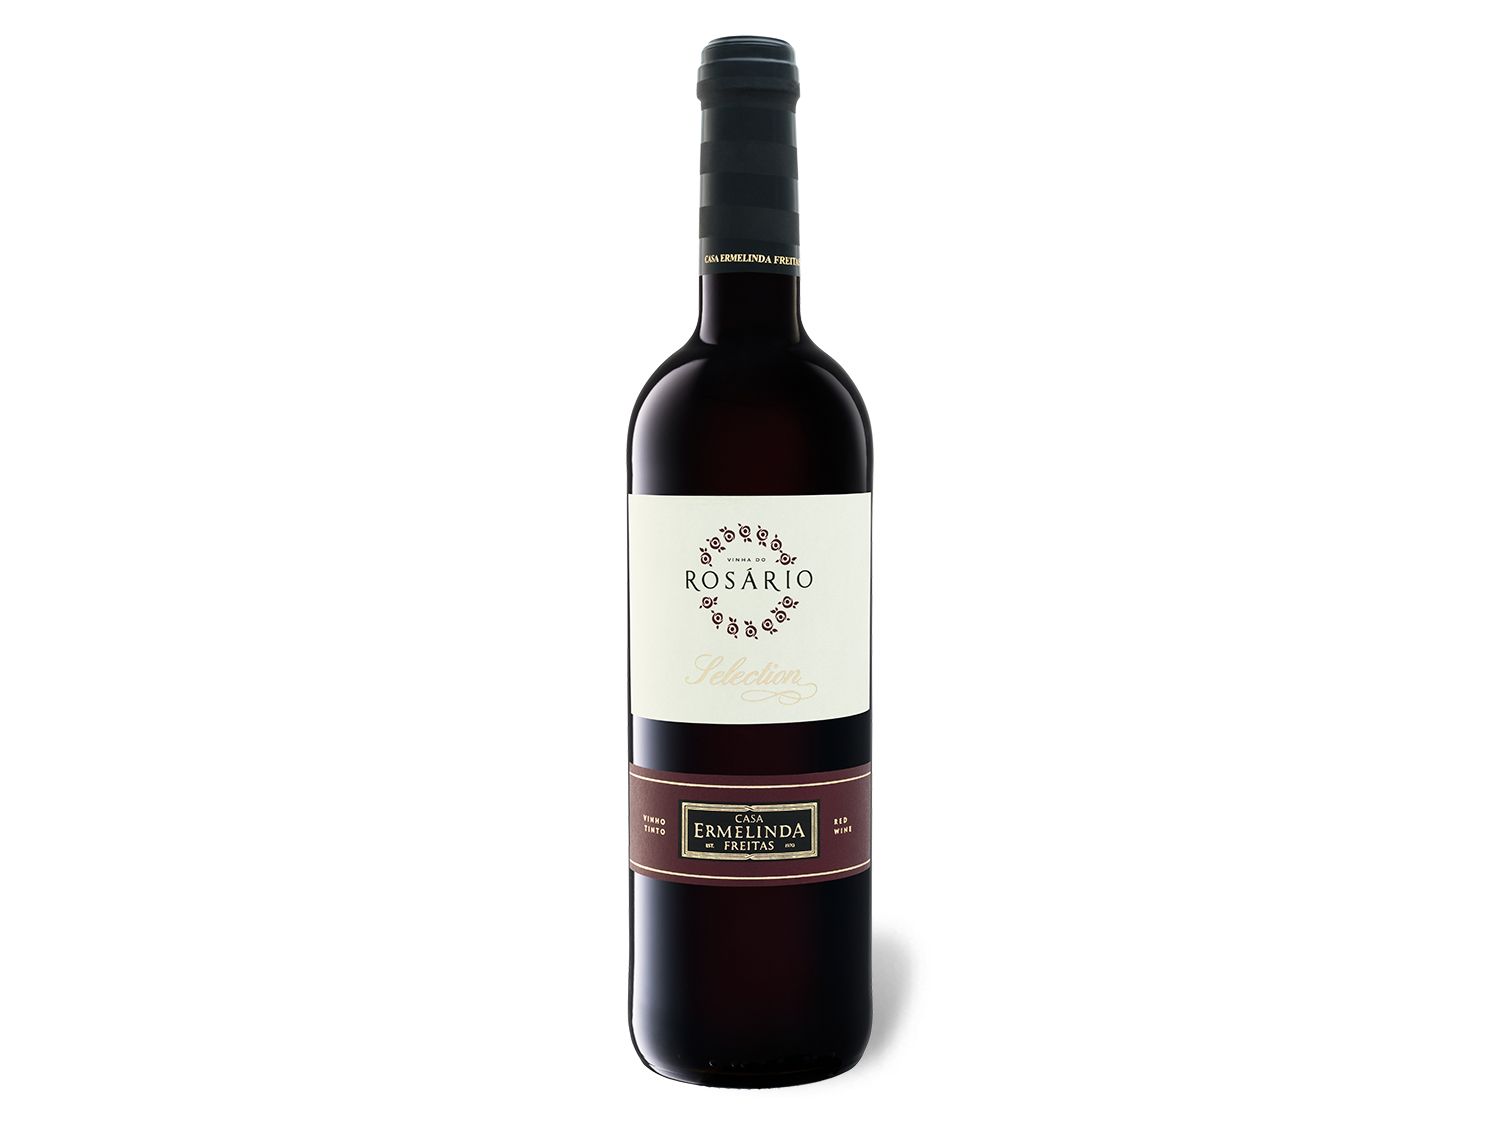 Vinha do Rosário Selection Casa Ermelinda Freitas trocken, Rotwein 2019 Wein & Spirituosen Lidl DE